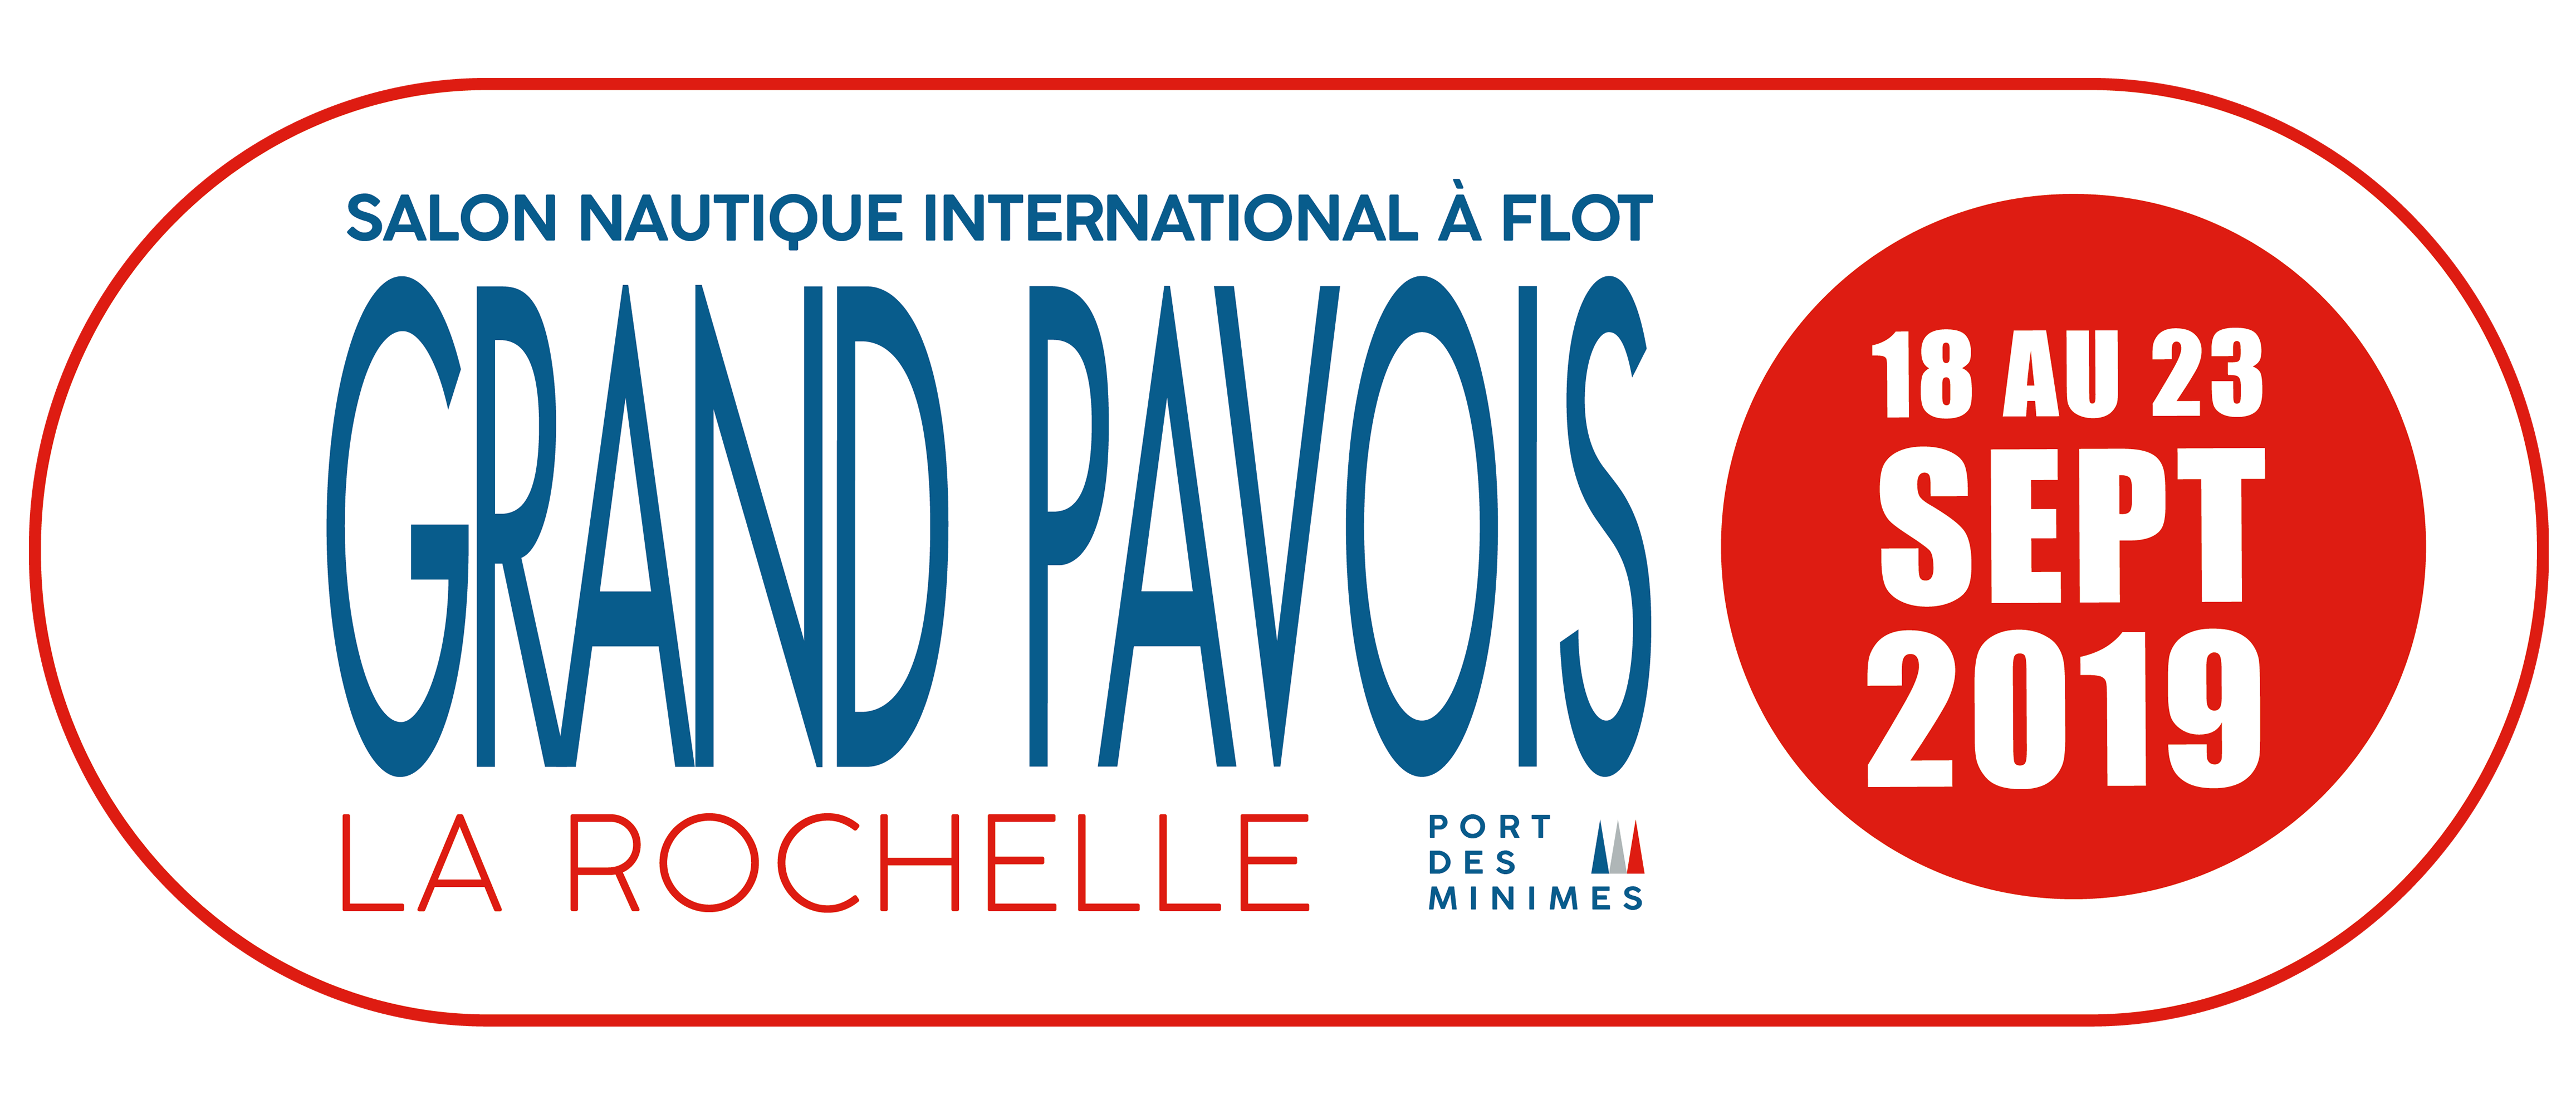 GRAND PAVOIS – LA ROCHELLE 2019